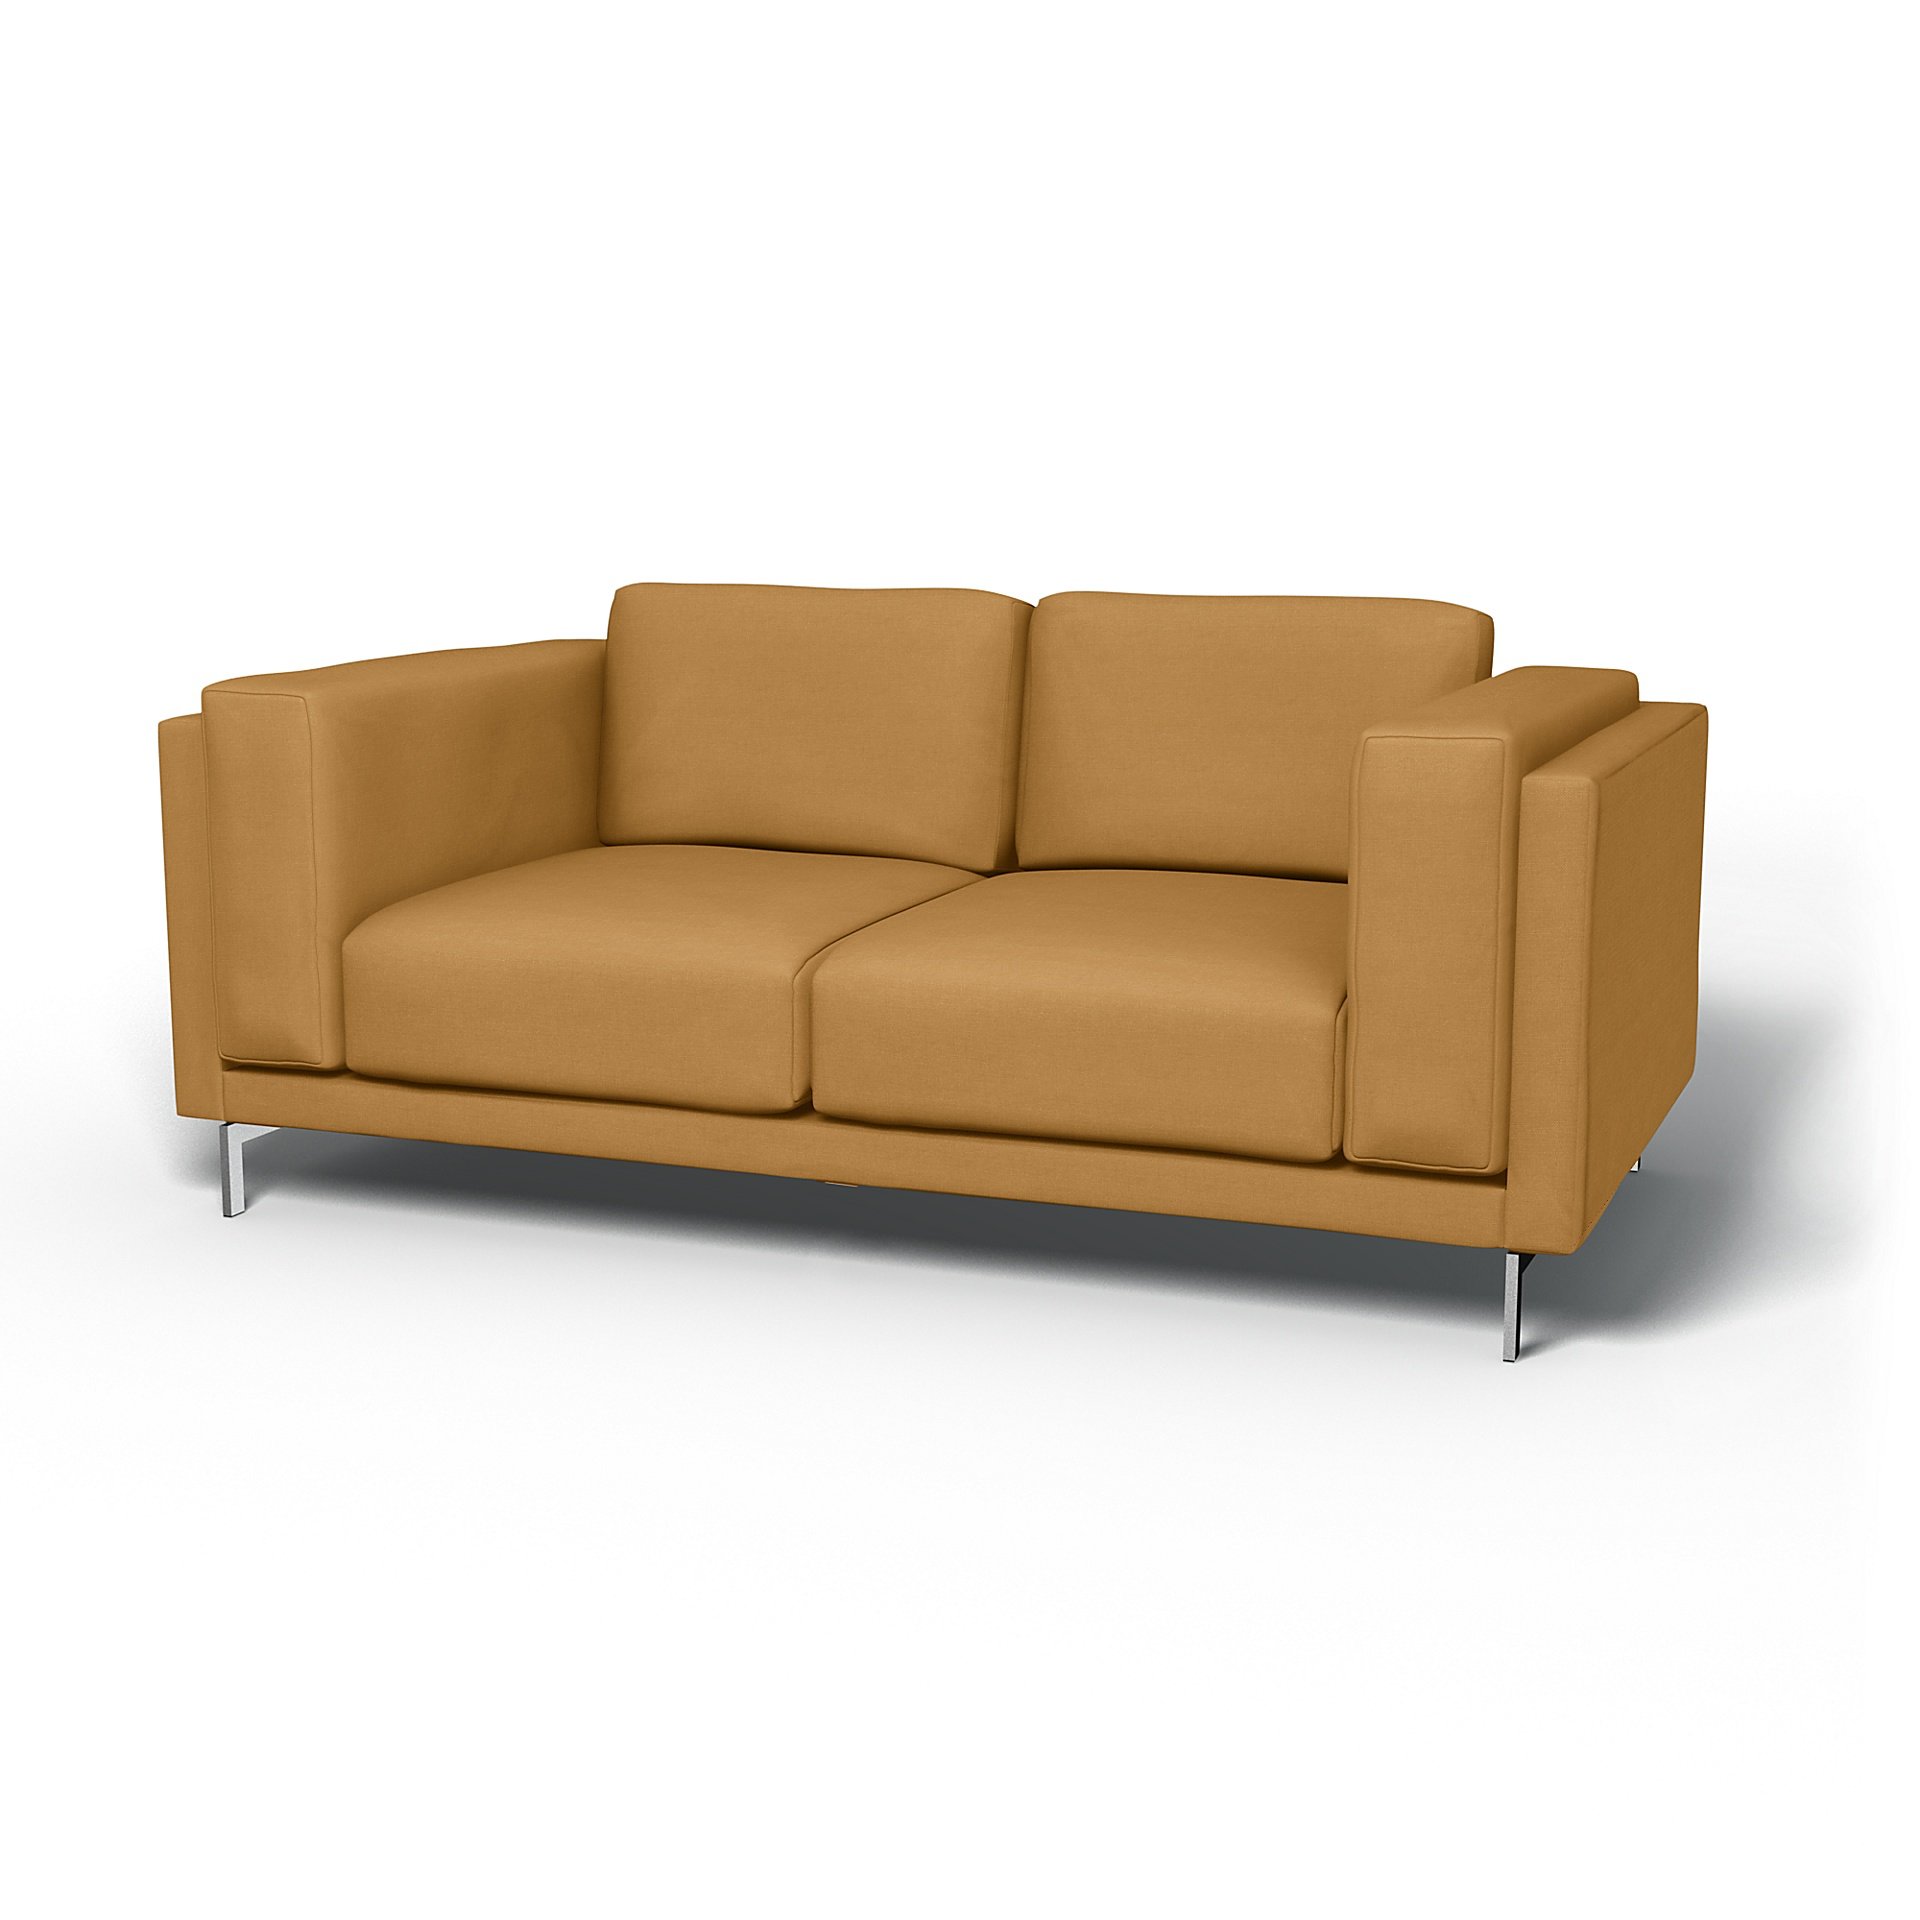 IKEA - Nockeby 2 Seater Sofa Cover, Mustard, Linen - Bemz